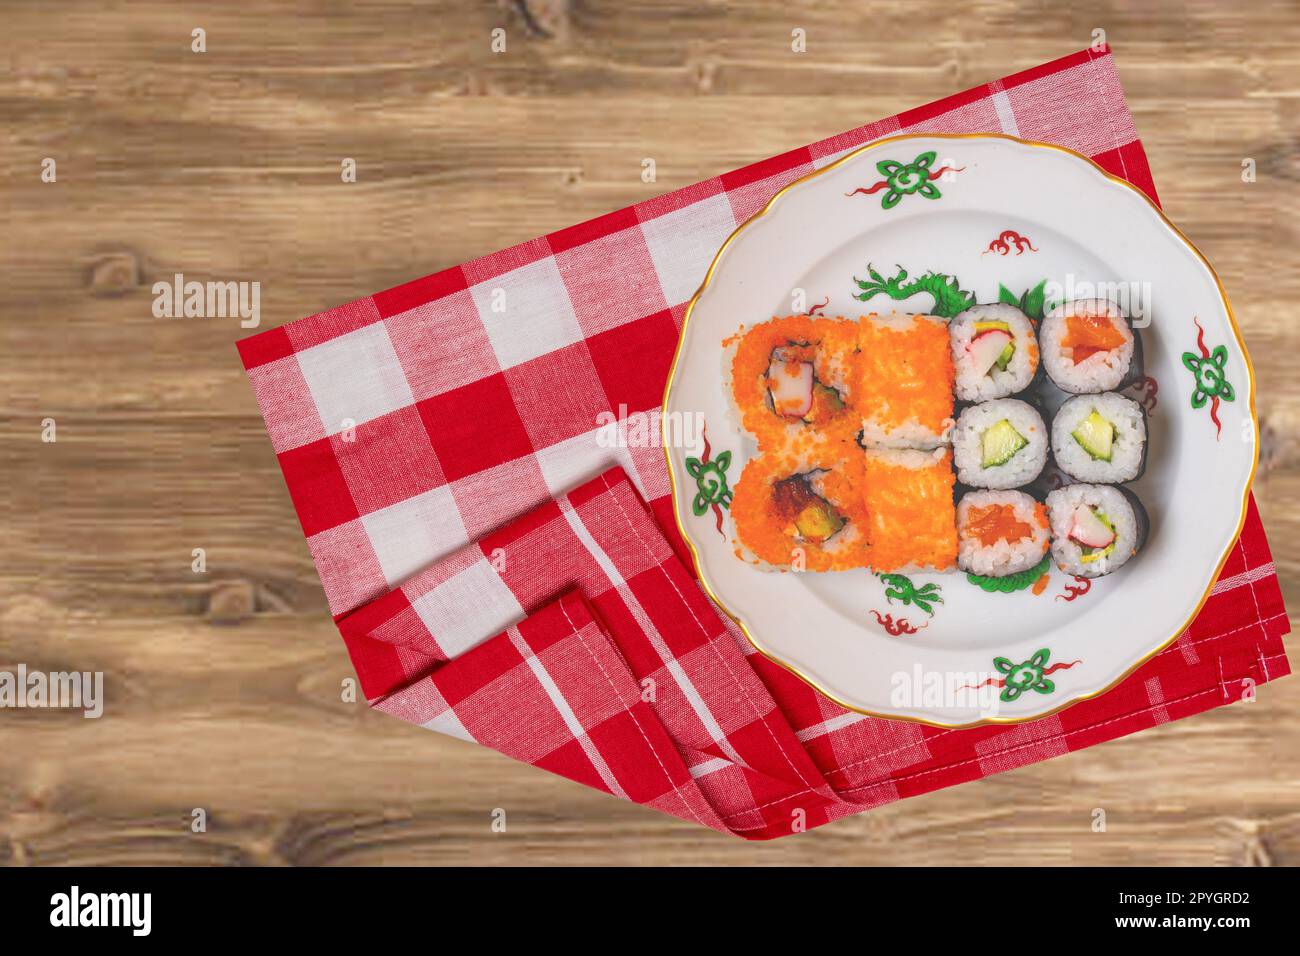 Traditionelles japanisches Sushi-Menü. Verschiedene Arten von Sushi Brötchen mit Lachs, Sashimi serviert auf einem bunten Teller auf einer rot karierten Serviette auf einem rustikalen Tisch. Draufsicht. Leerzeichen. Stockfoto